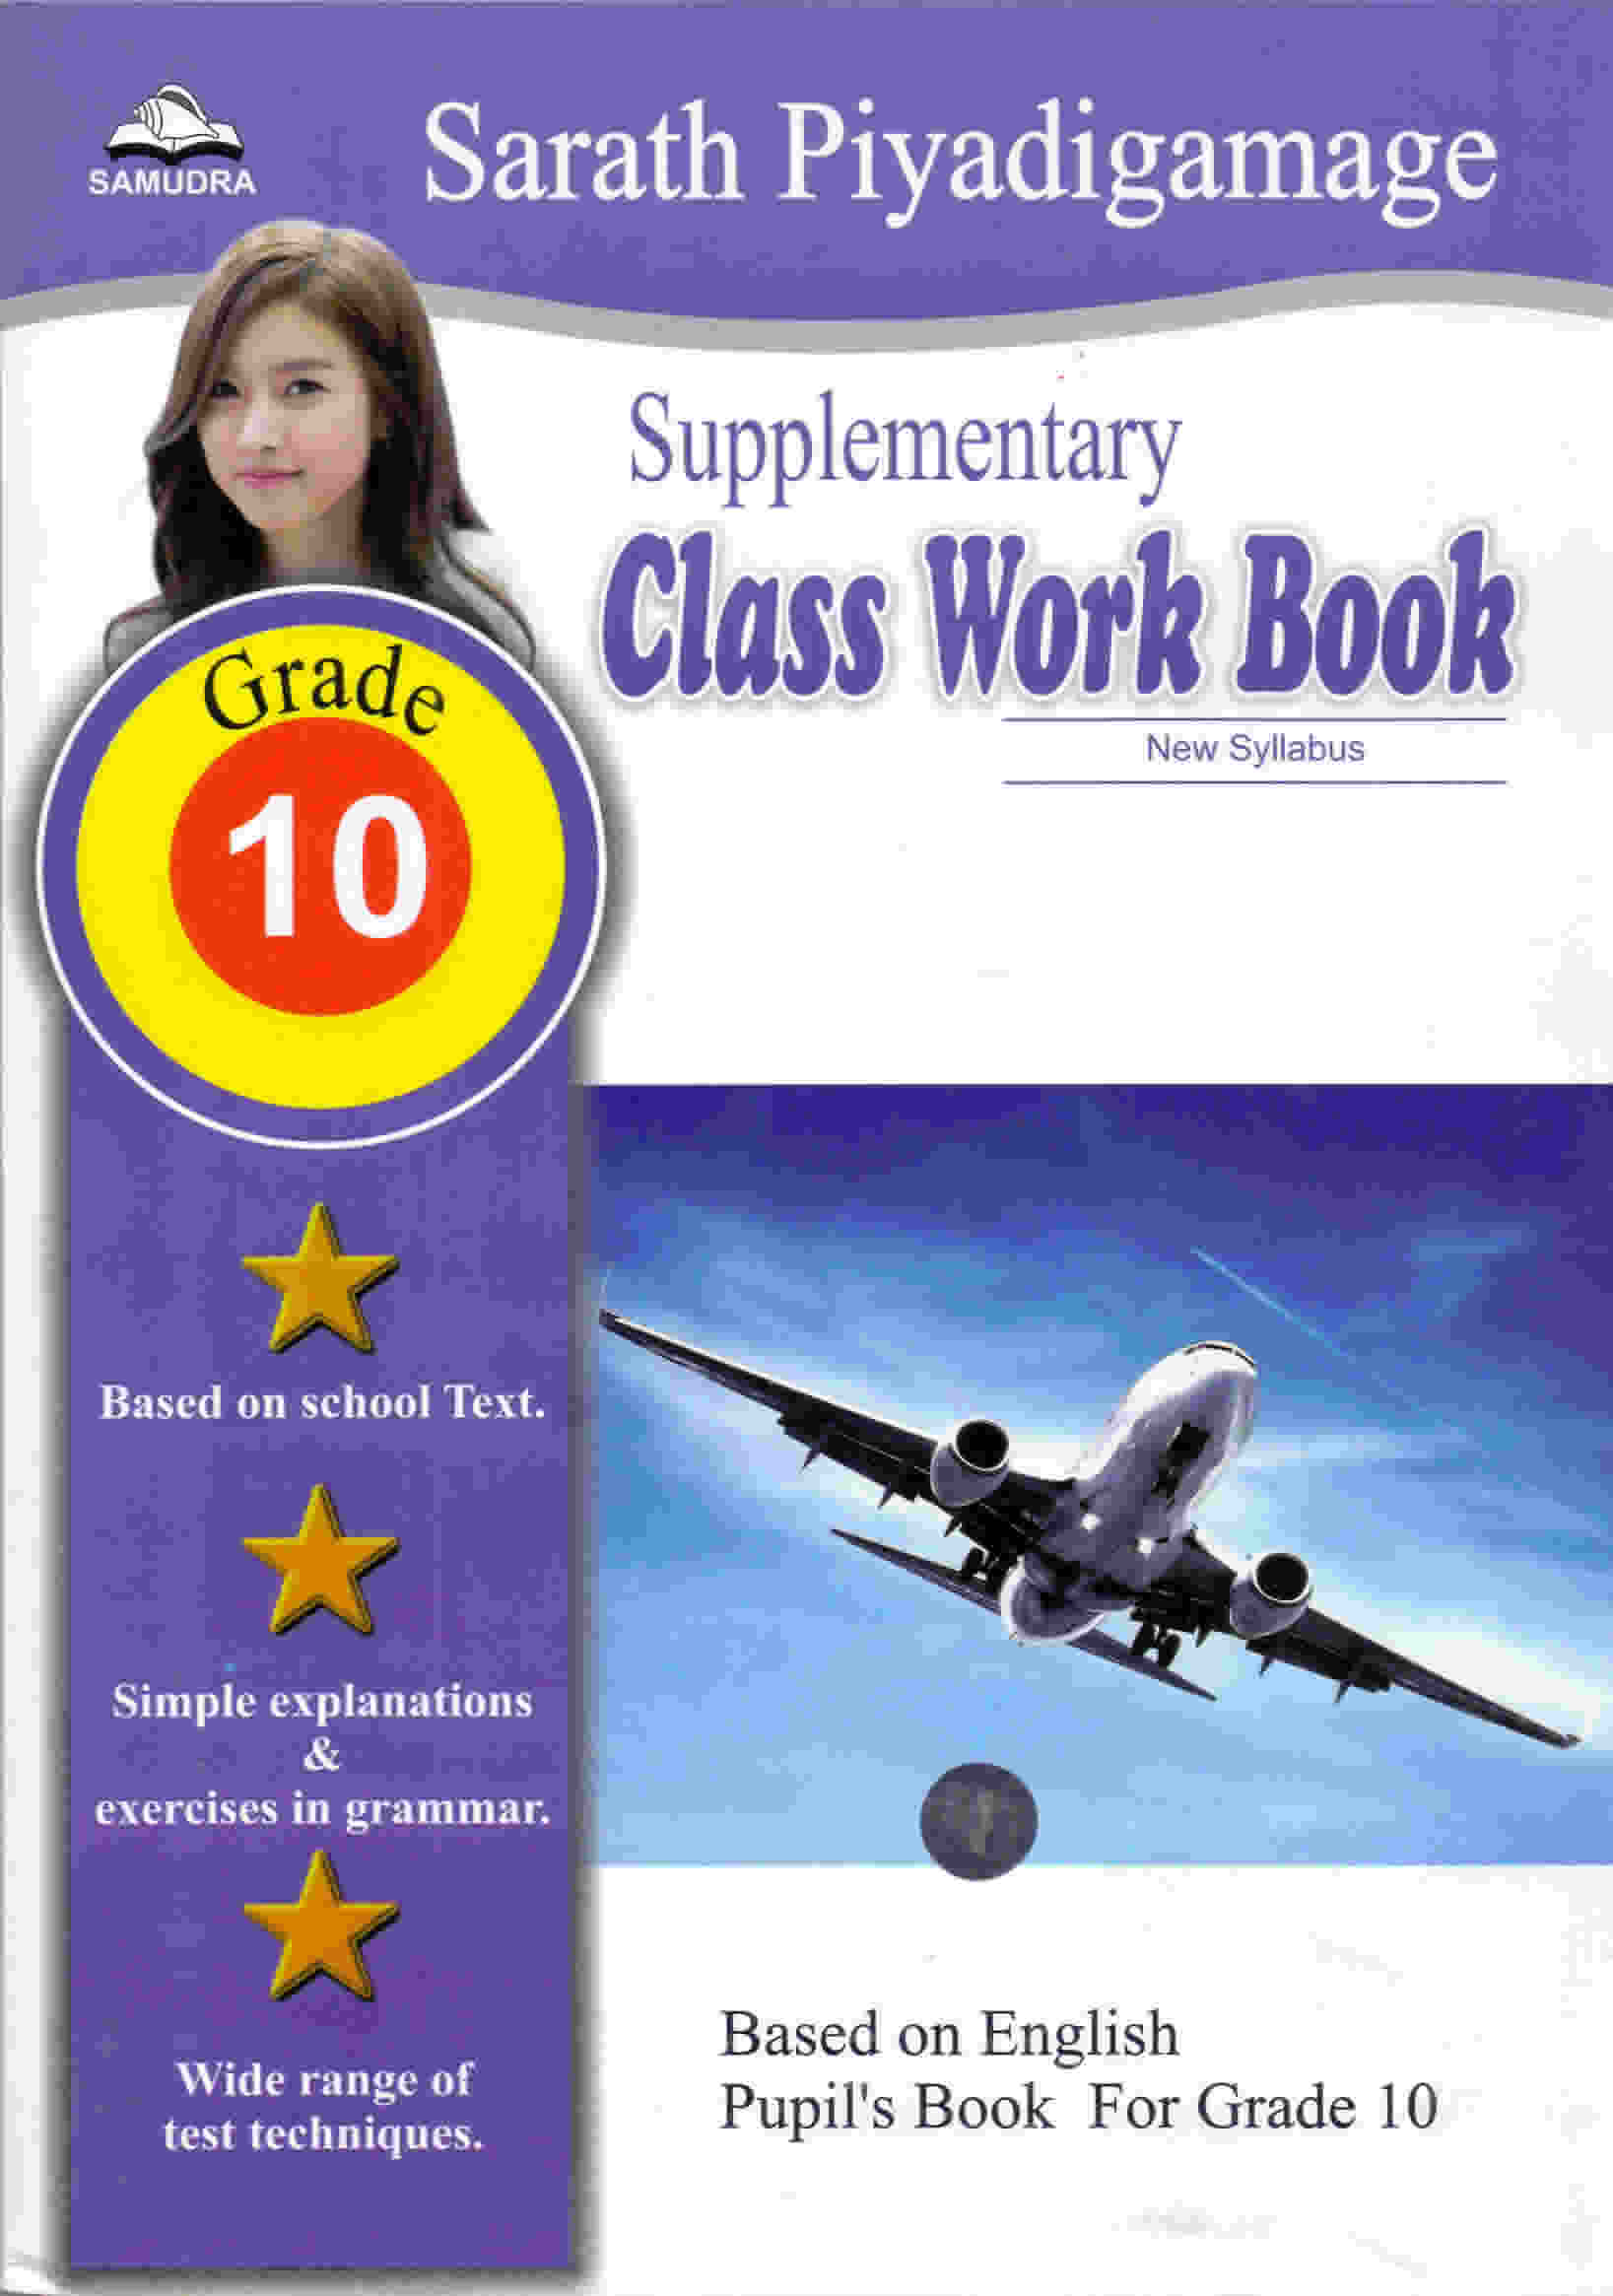 Supplementary Class Work Book Grade 10 (New Syllabus)